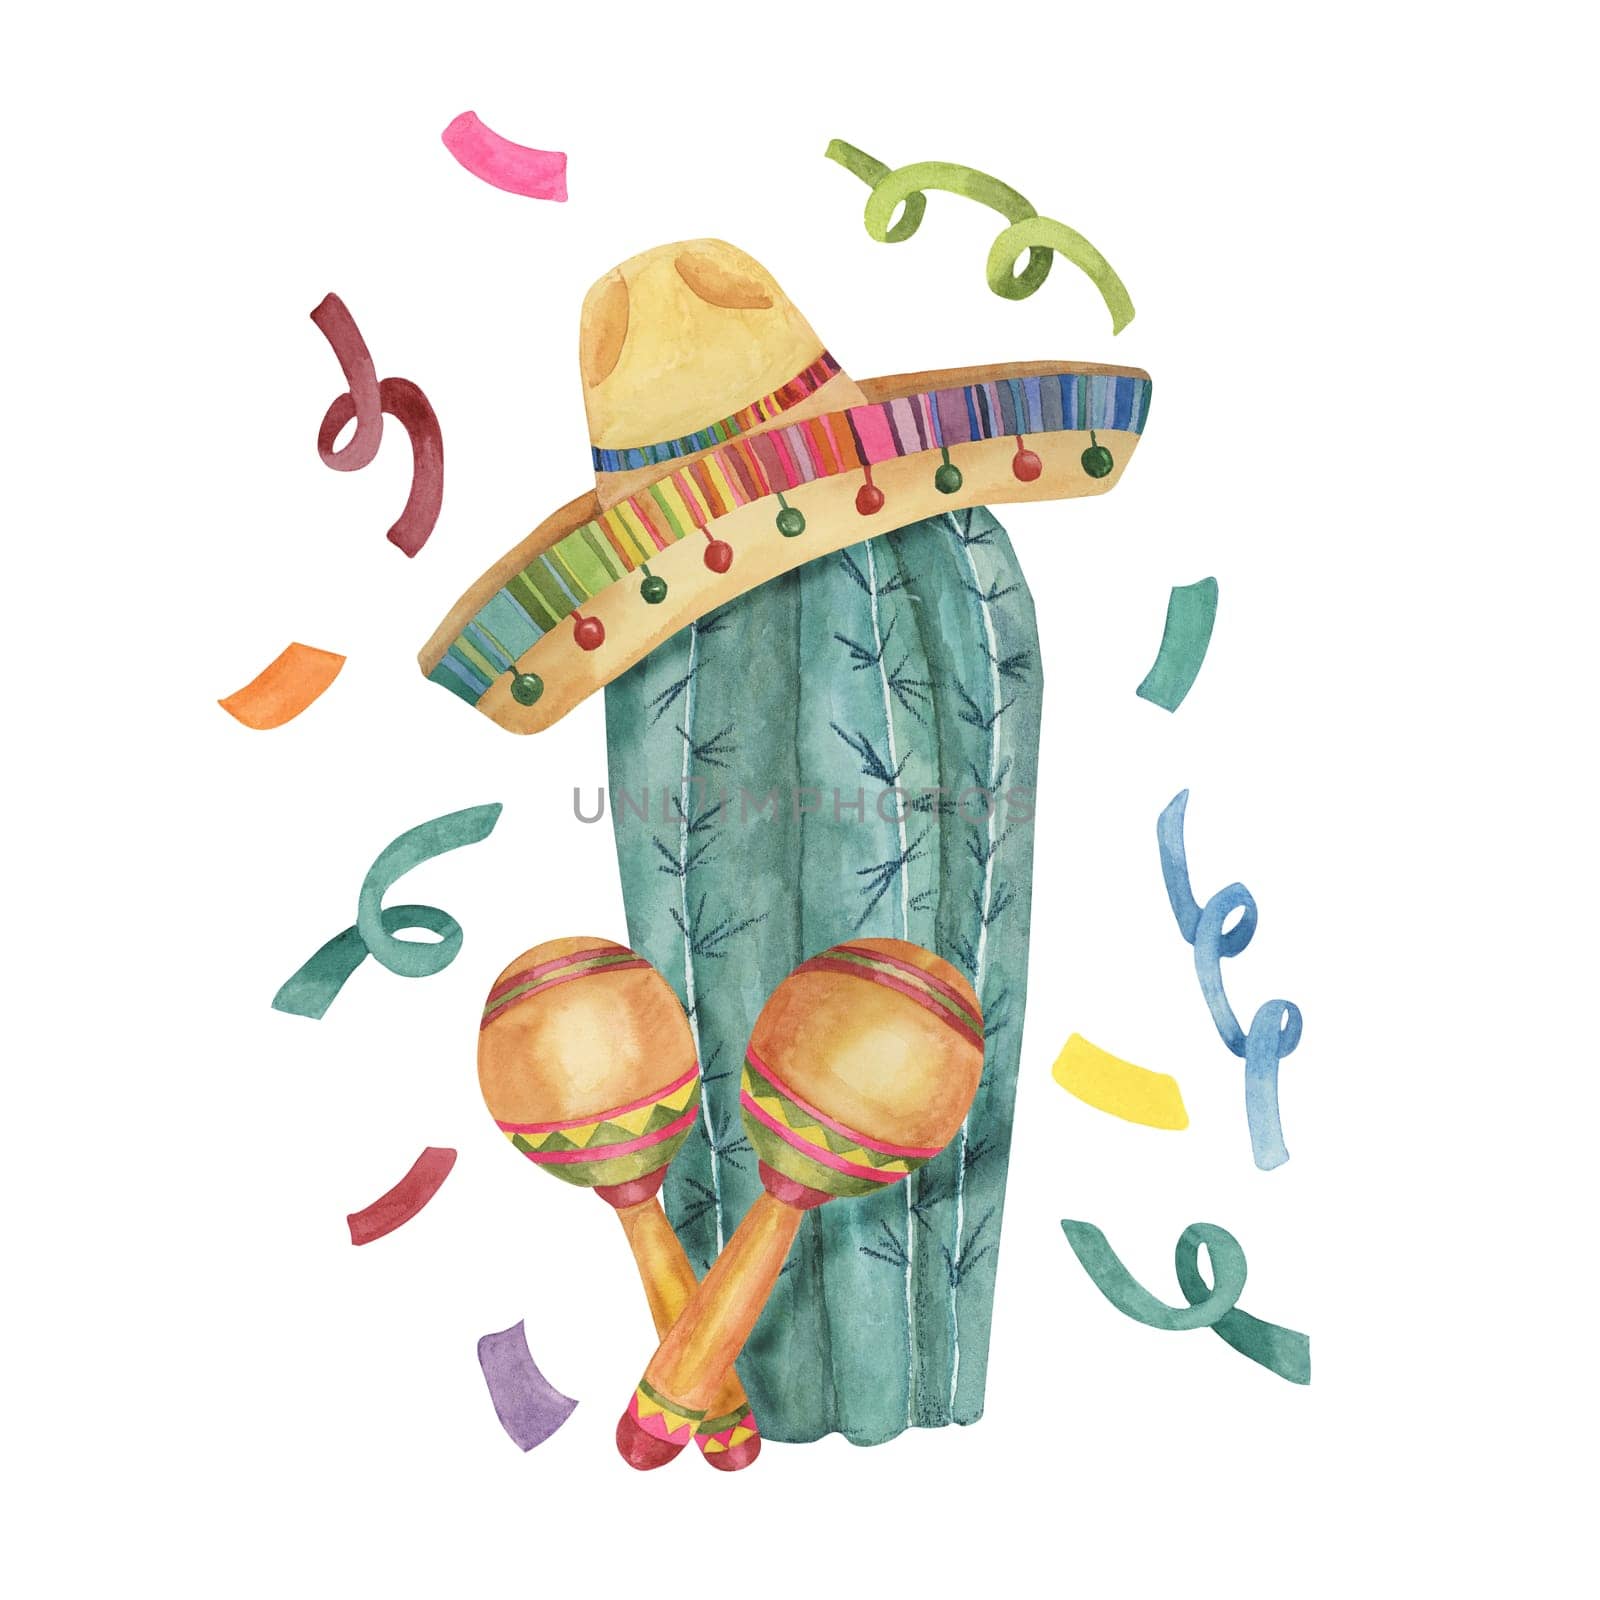 Cactus with confetti in sombrero by Fofito